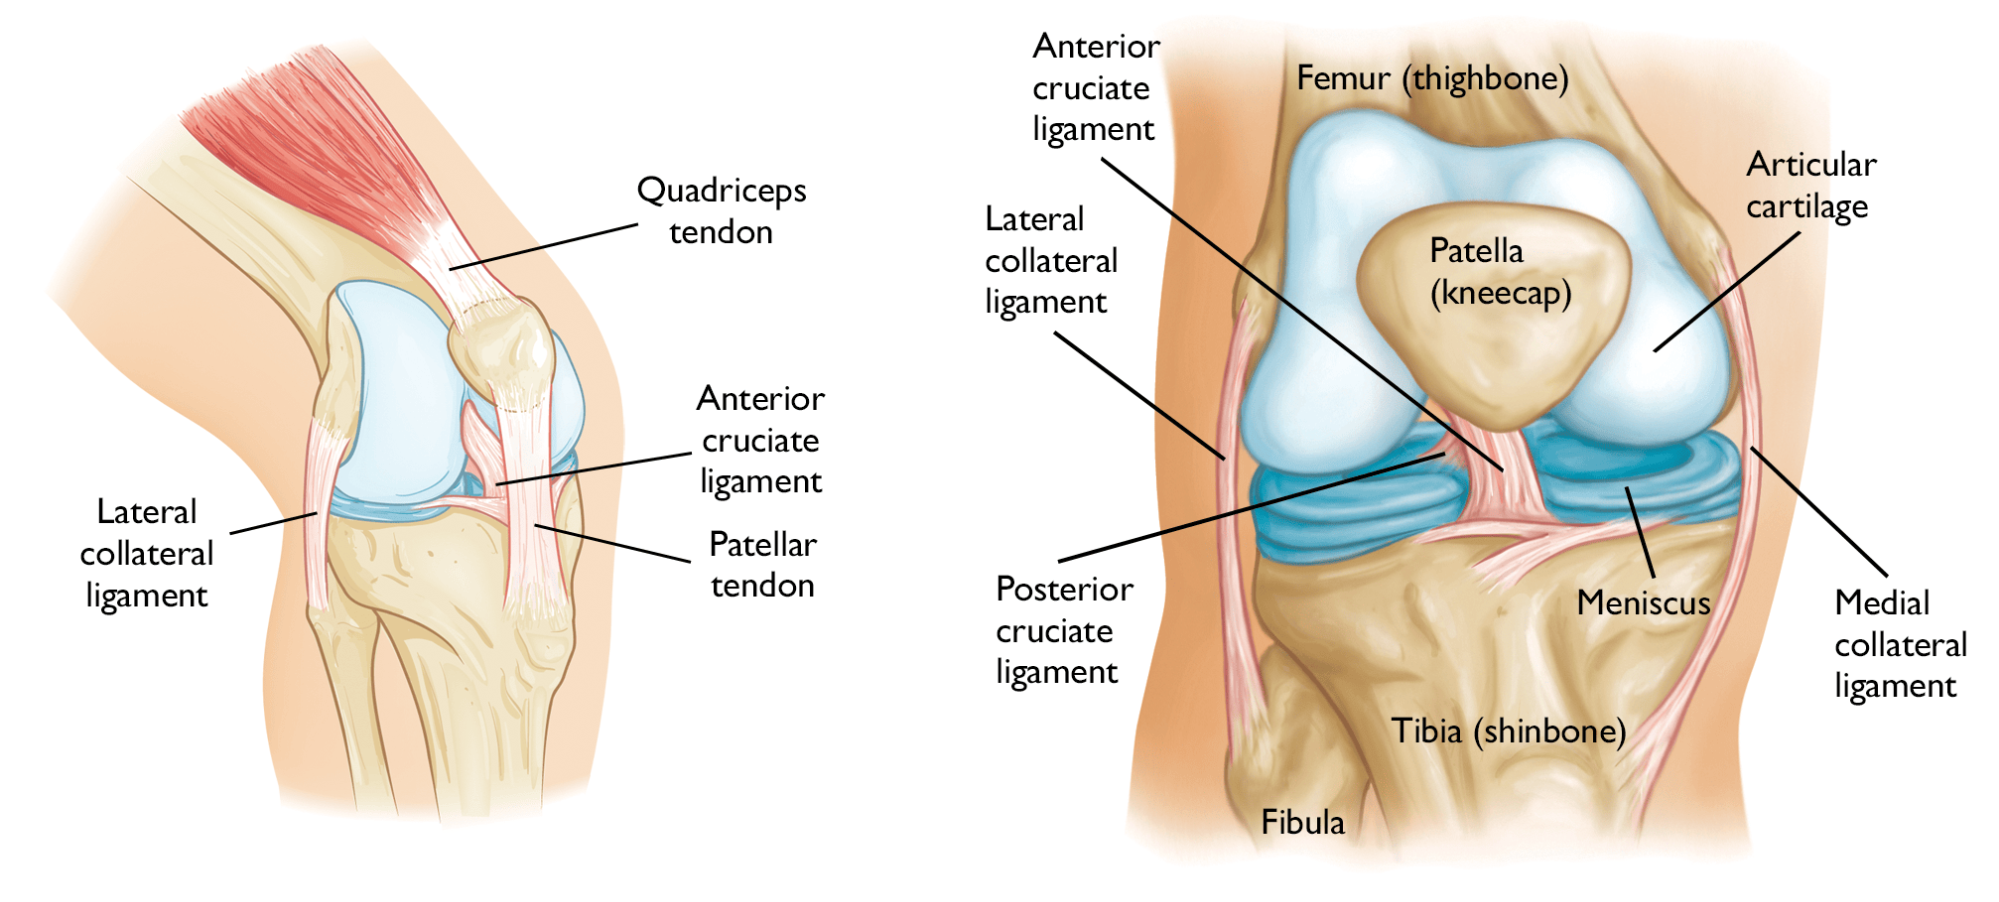 Anatomy of Knee osteoarthritis